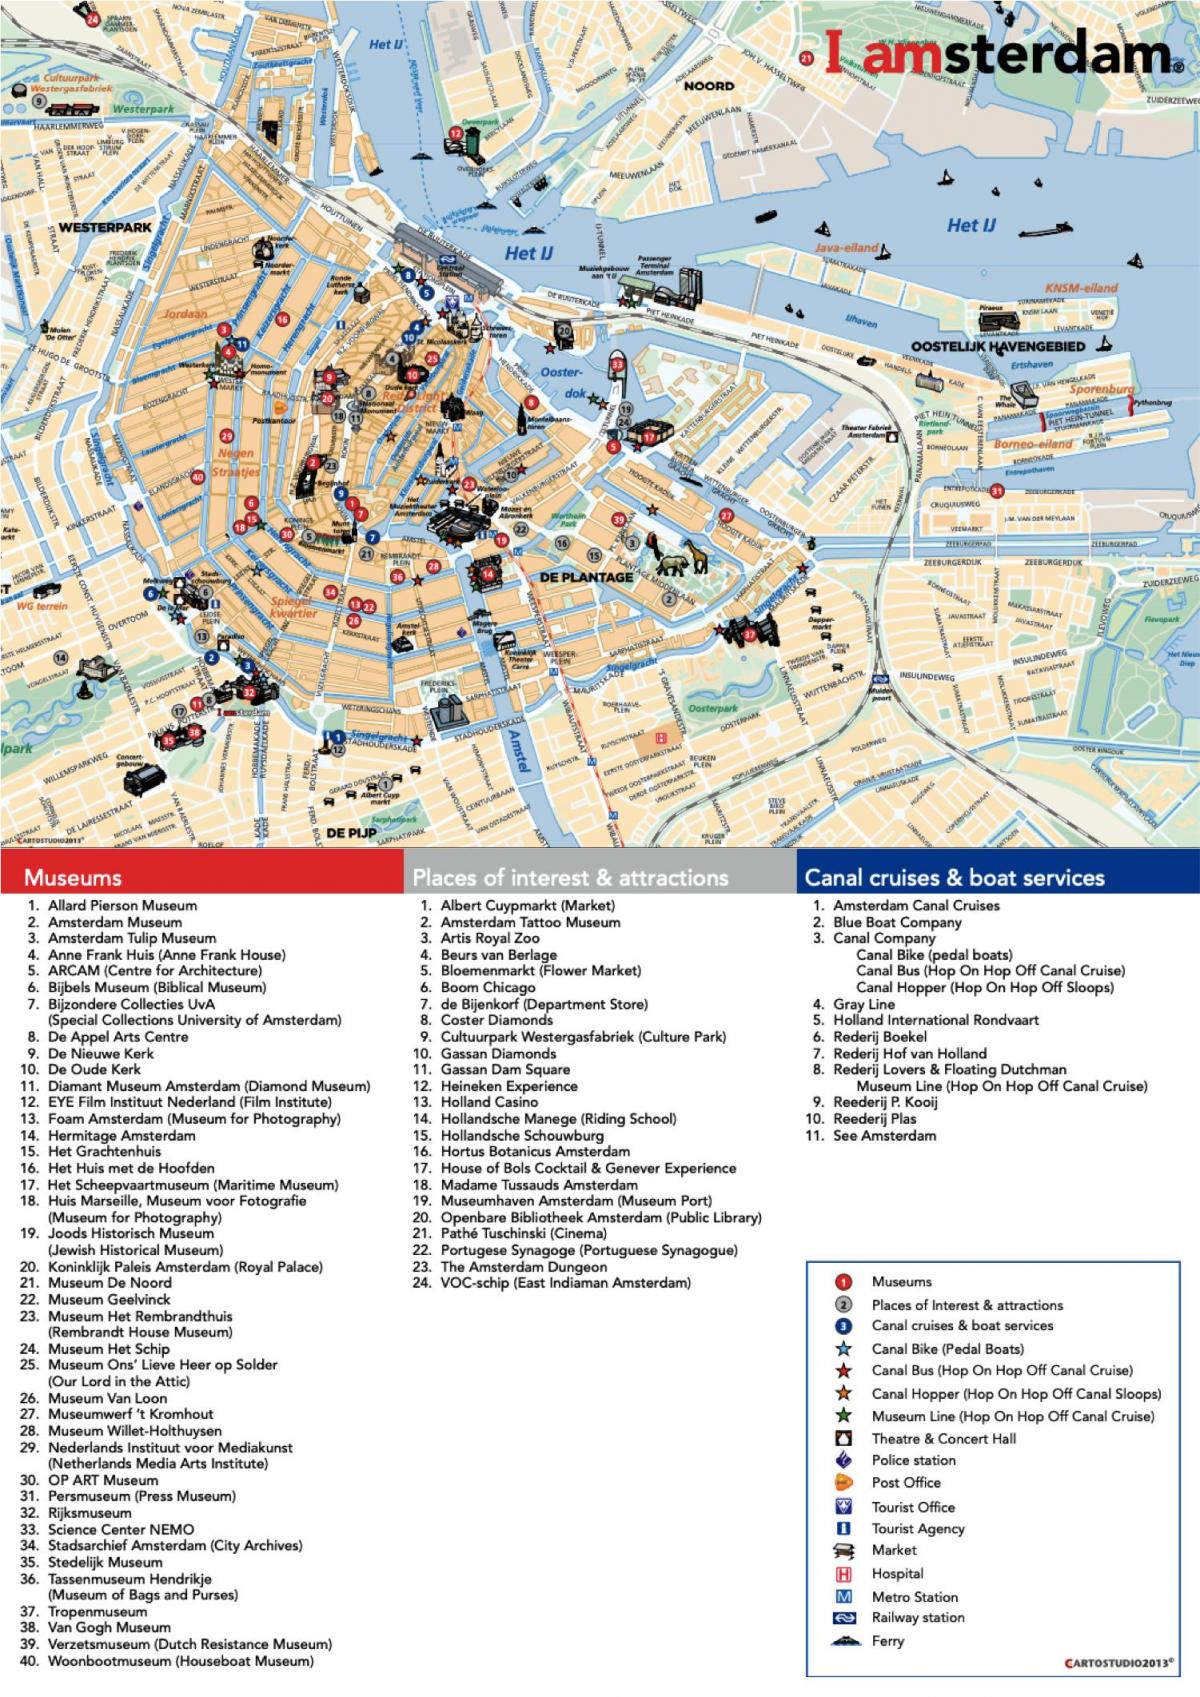 阿姆斯特丹博物馆的地图